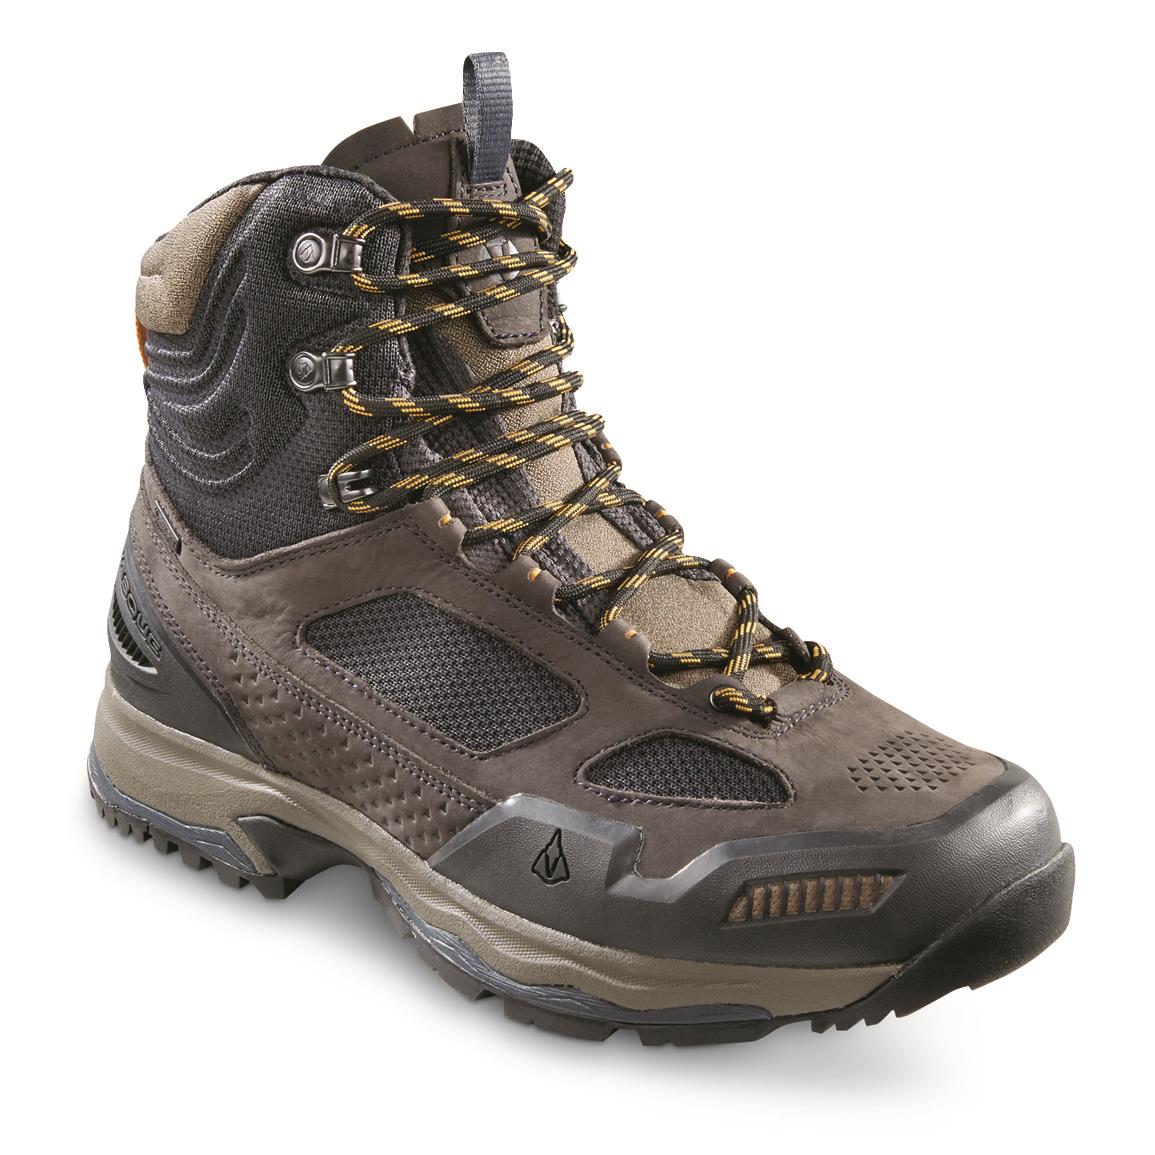 Vasque Men's Breeze AT GTX Waterproof Hiking Boots, GORE-TEX, Ebony/tawny Olive